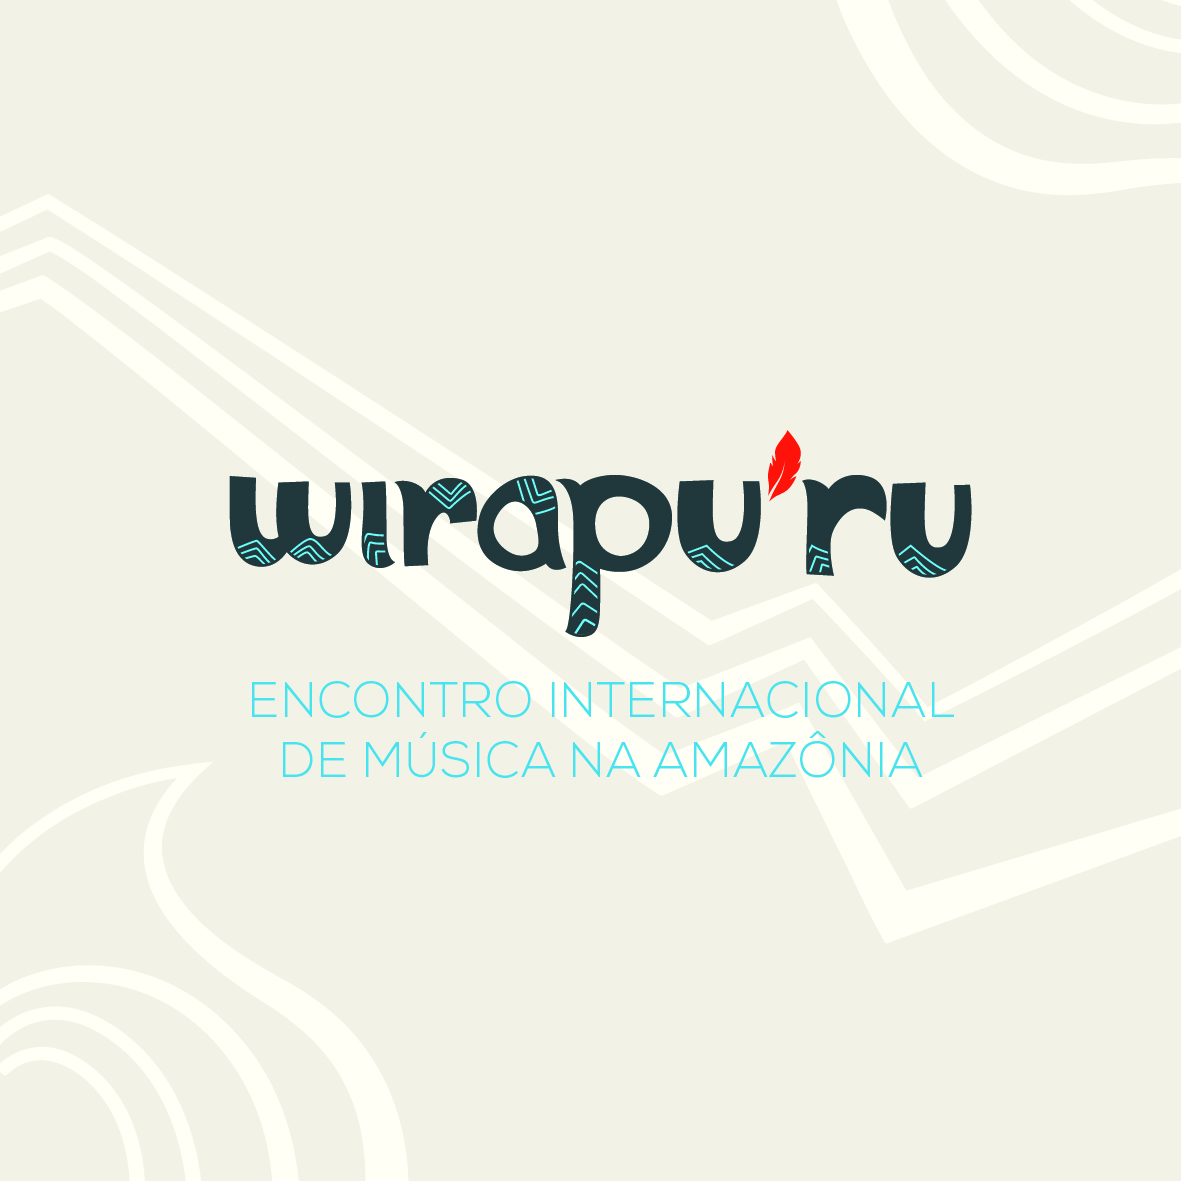 Ufopa sedia encontro internacional de música em dezembro